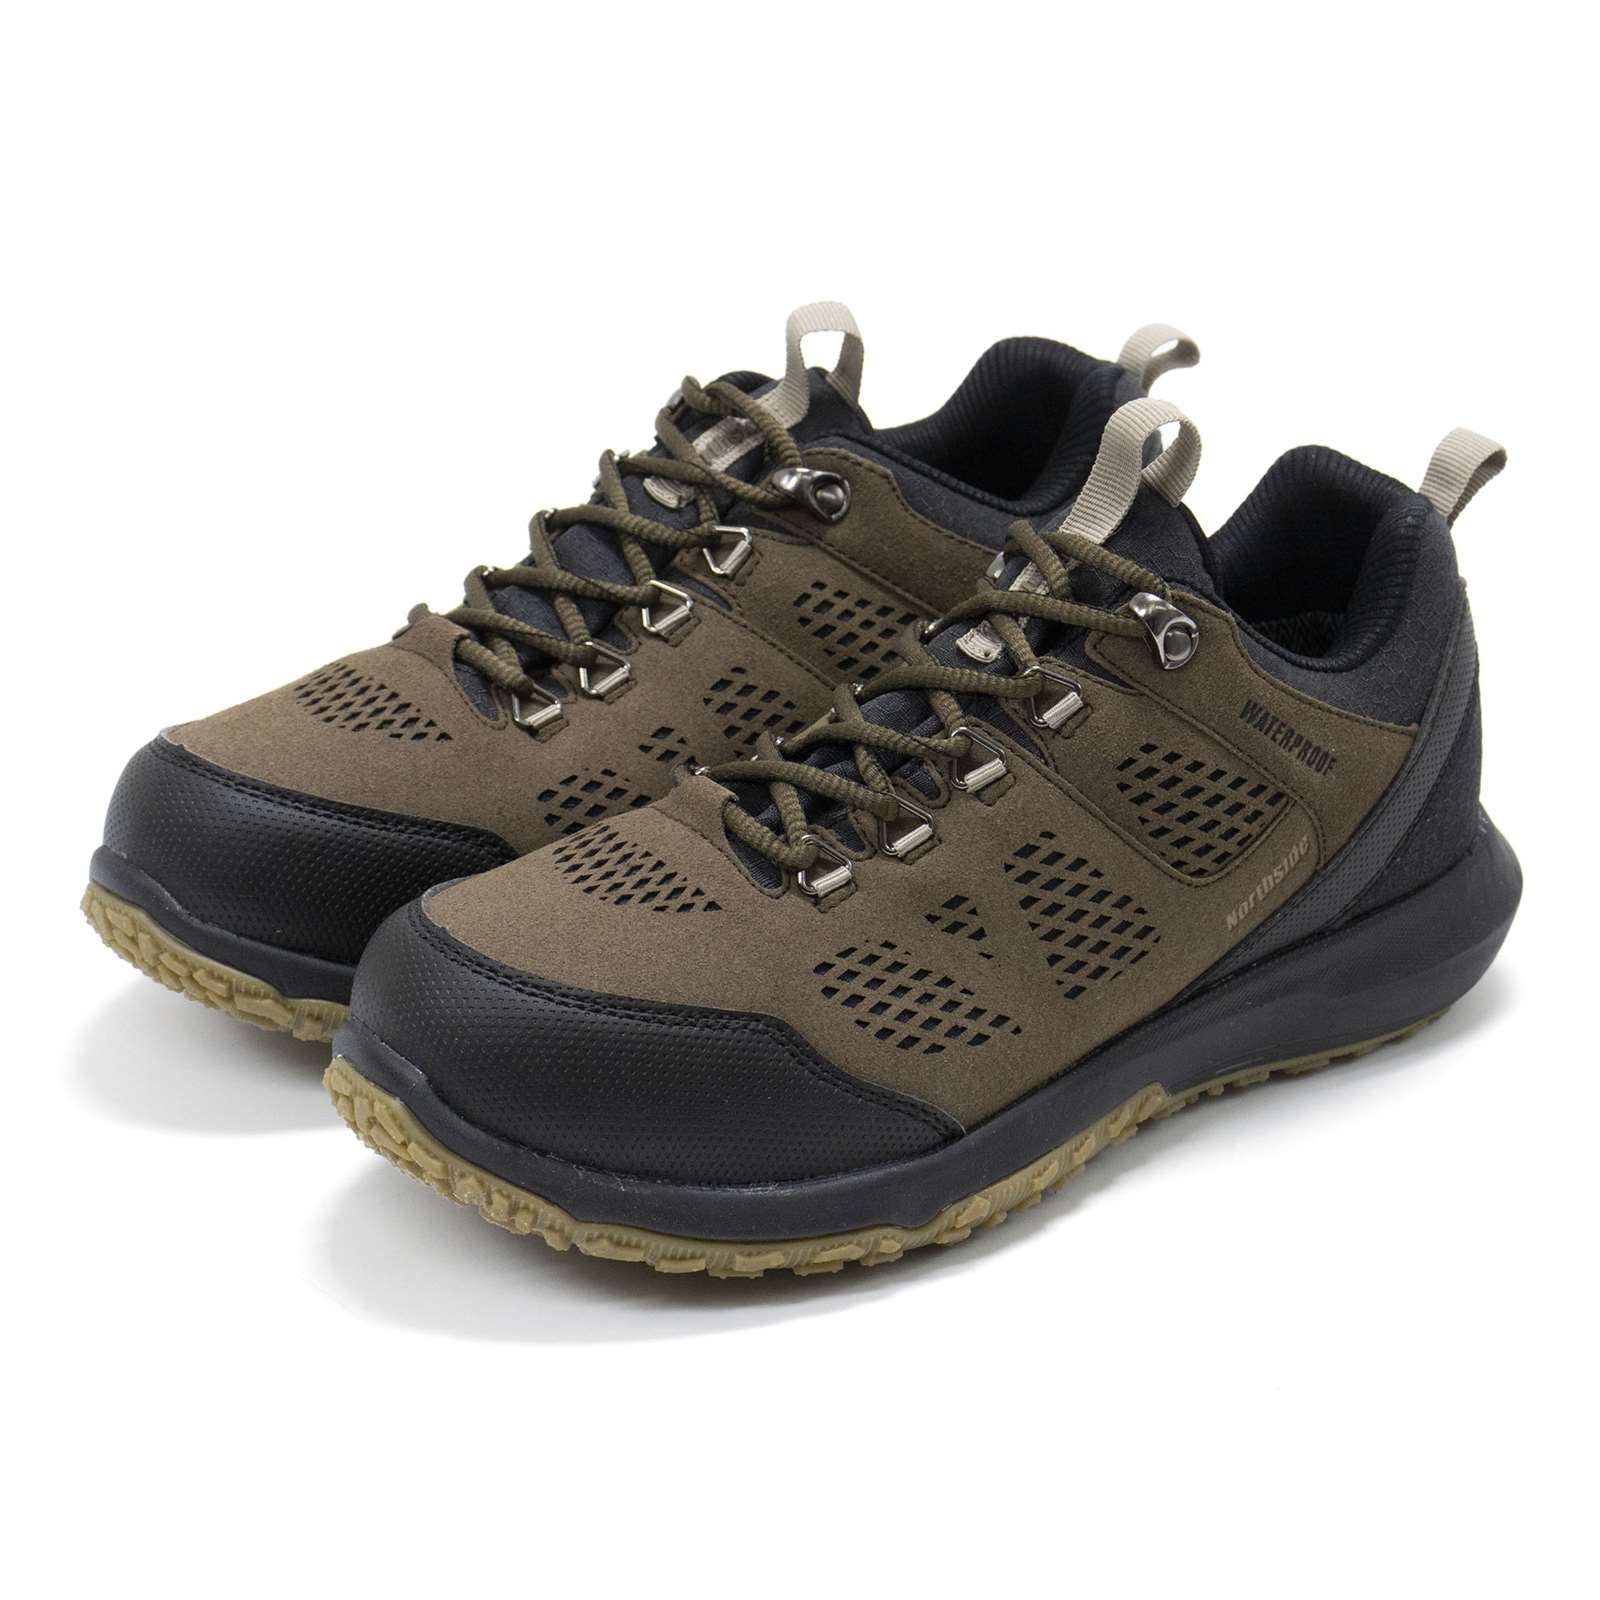 Northside Men Benton Waterproof Hiking Boots